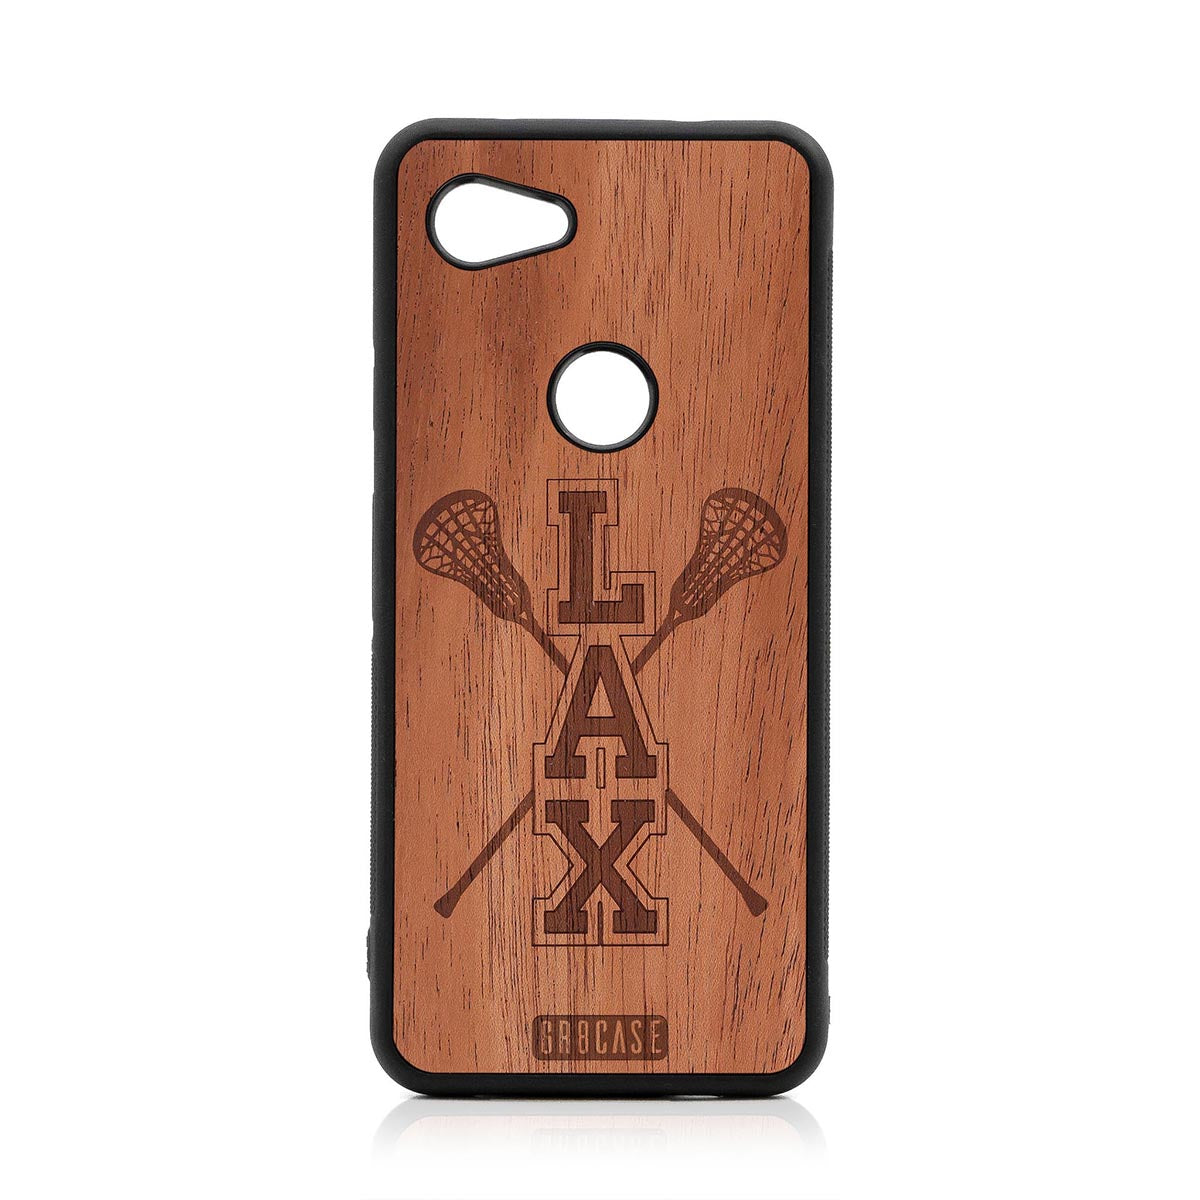 Lacrosse (LAX) Sticks Design Wood Case Google Pixel 3A XL by GR8CASE